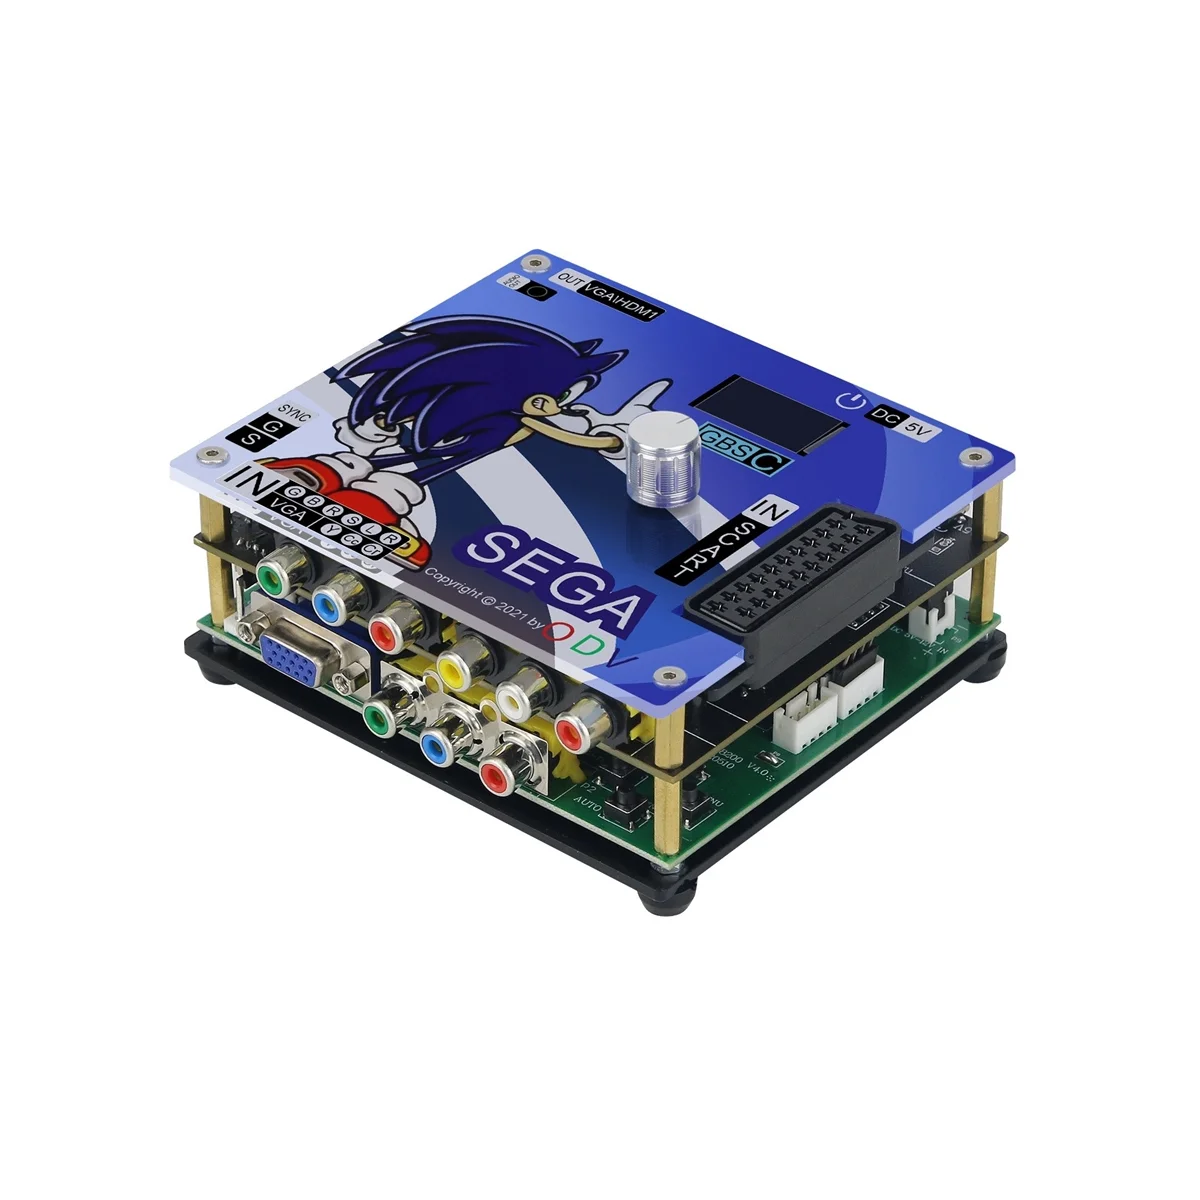 

Конвертер GBSC преобразователь GBS преобразователь видео для игр транскодер практичный аксессуар для ретро игр